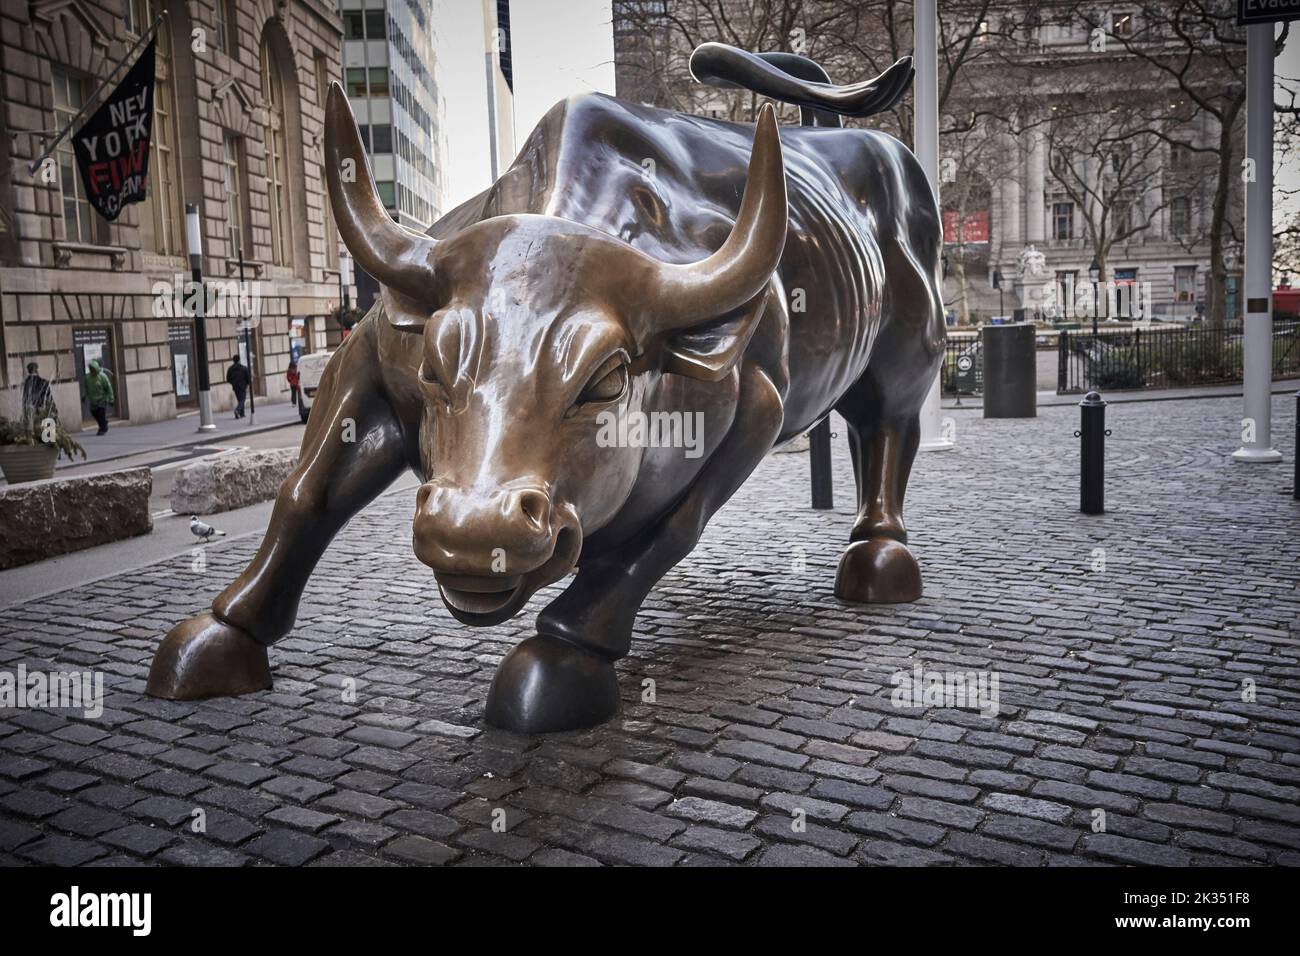 Le chargement de Bull est une destination touristique populaire qui attire des milliers de personnes, symbolisant Wall Street et le quartier financier. Banque D'Images